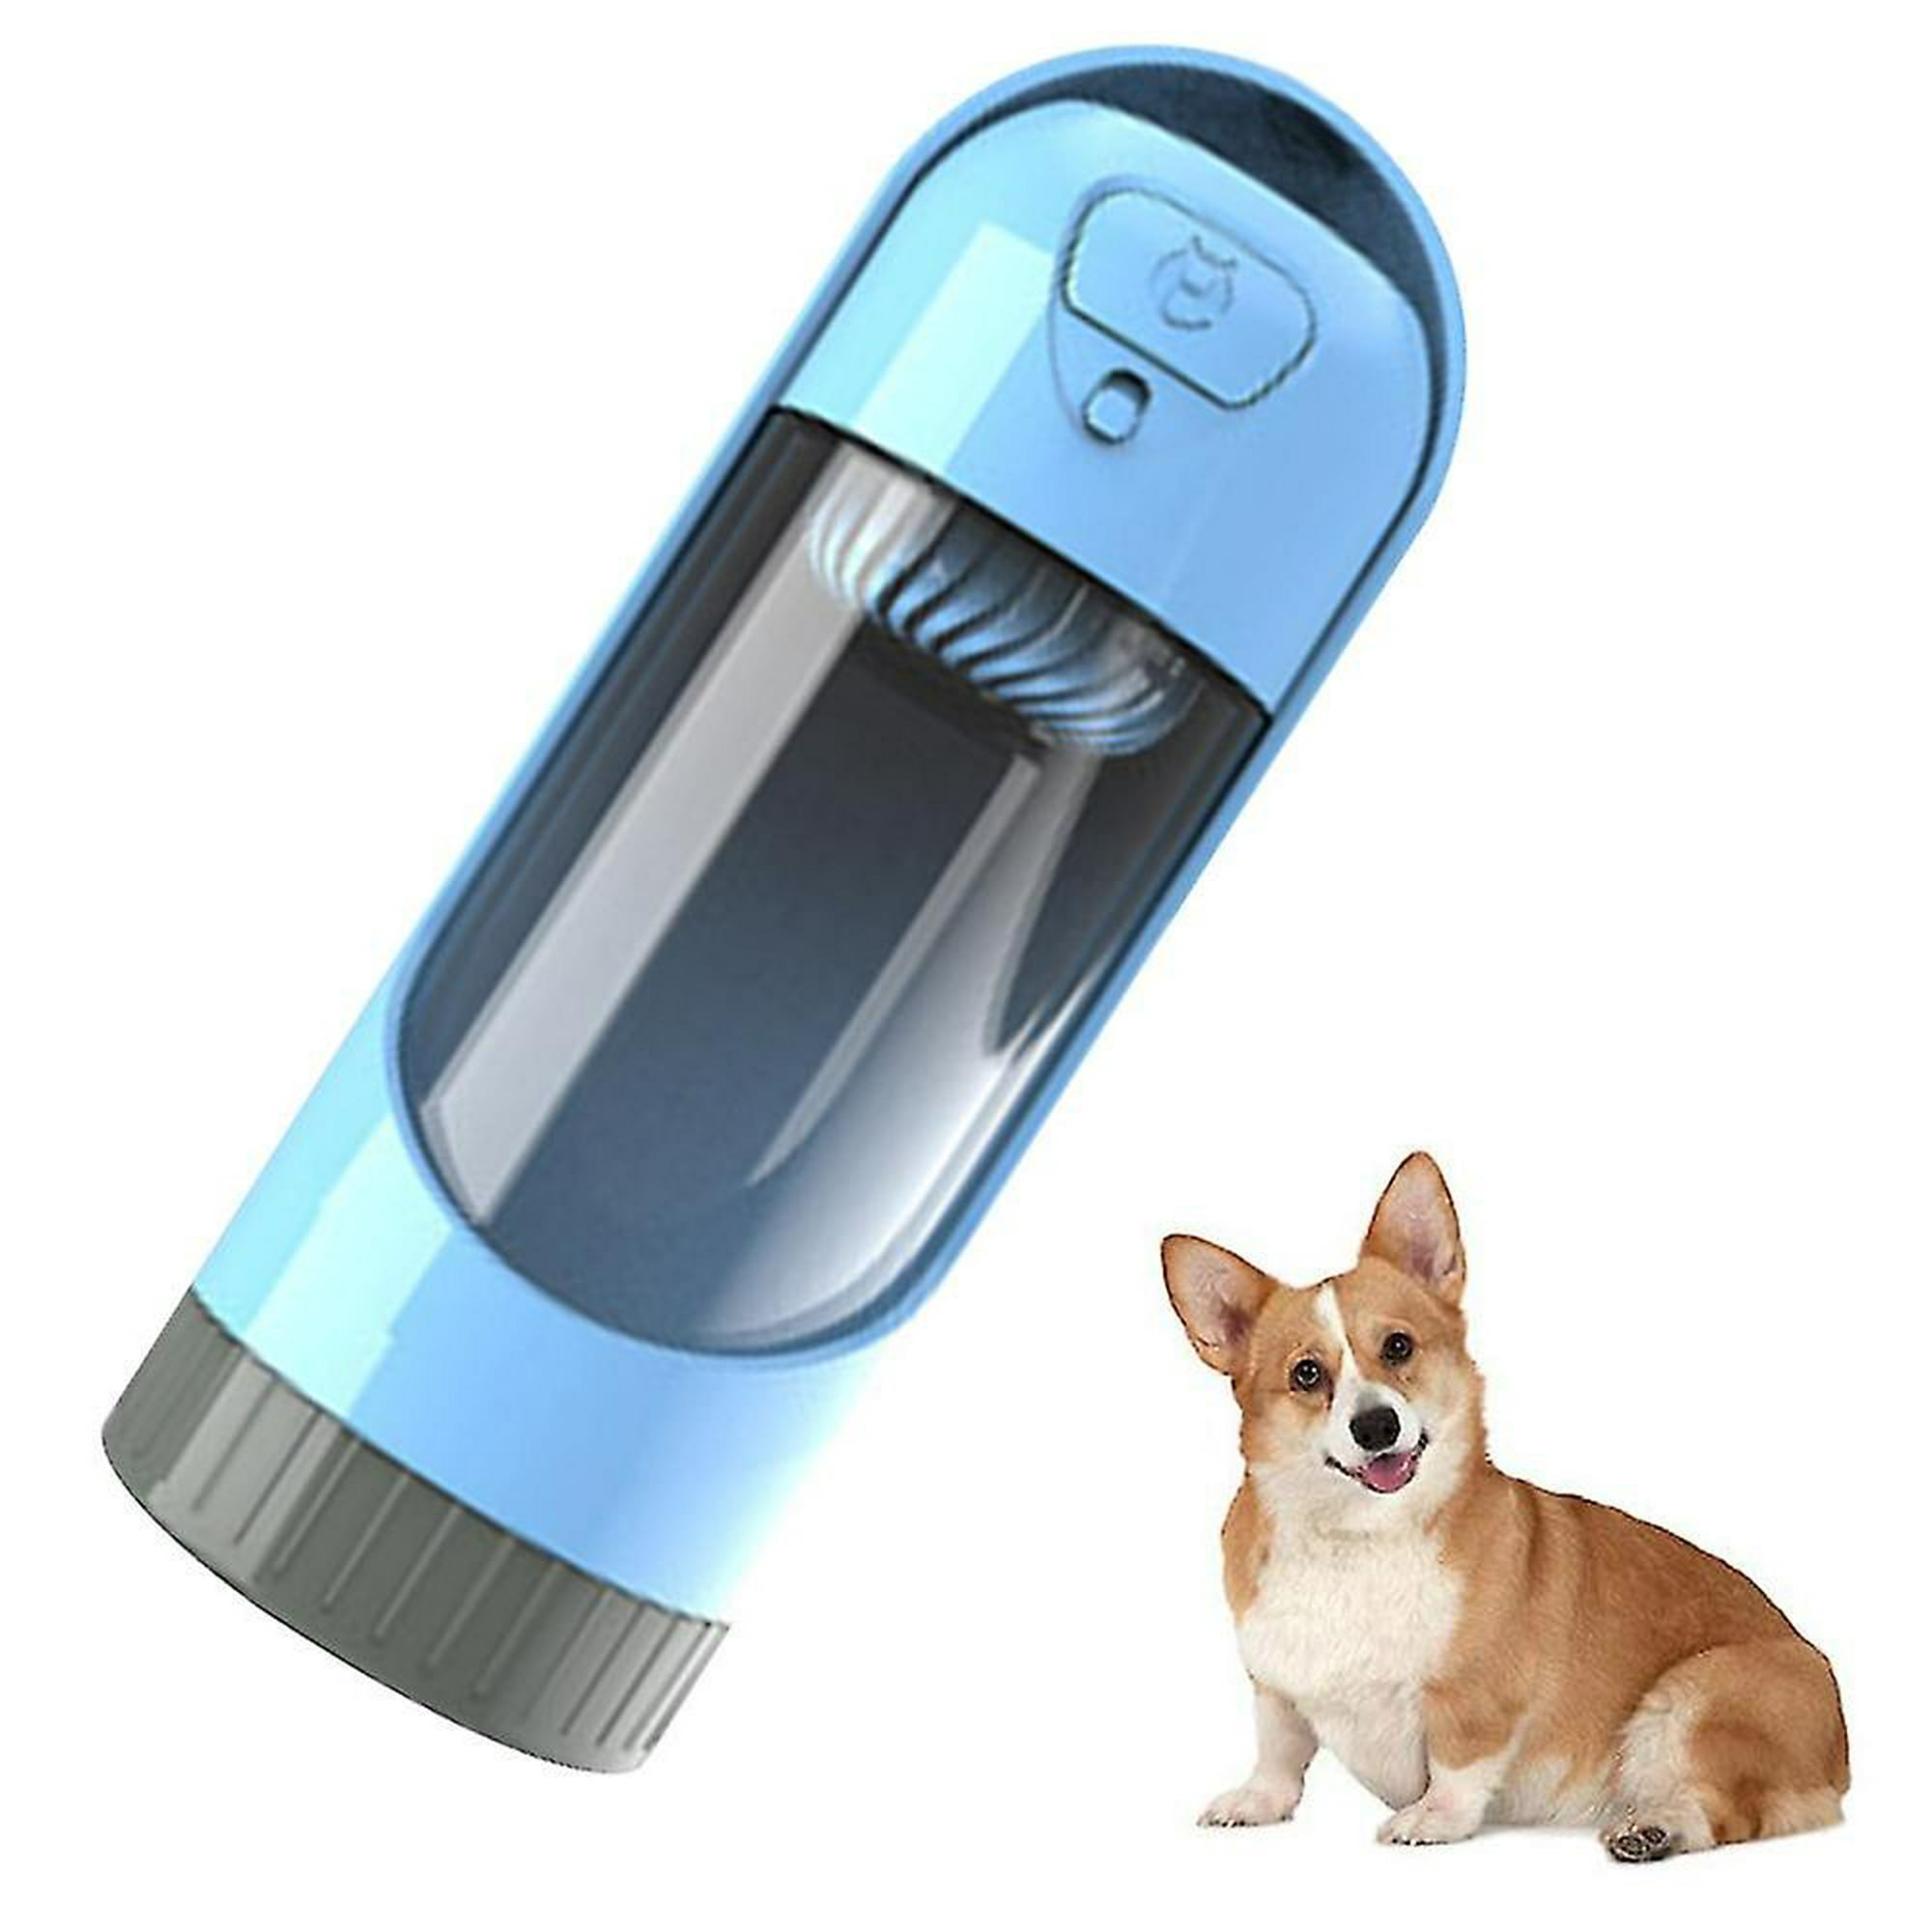 Botella y bebedero azul 250ml —  — Bebedero portátil perros